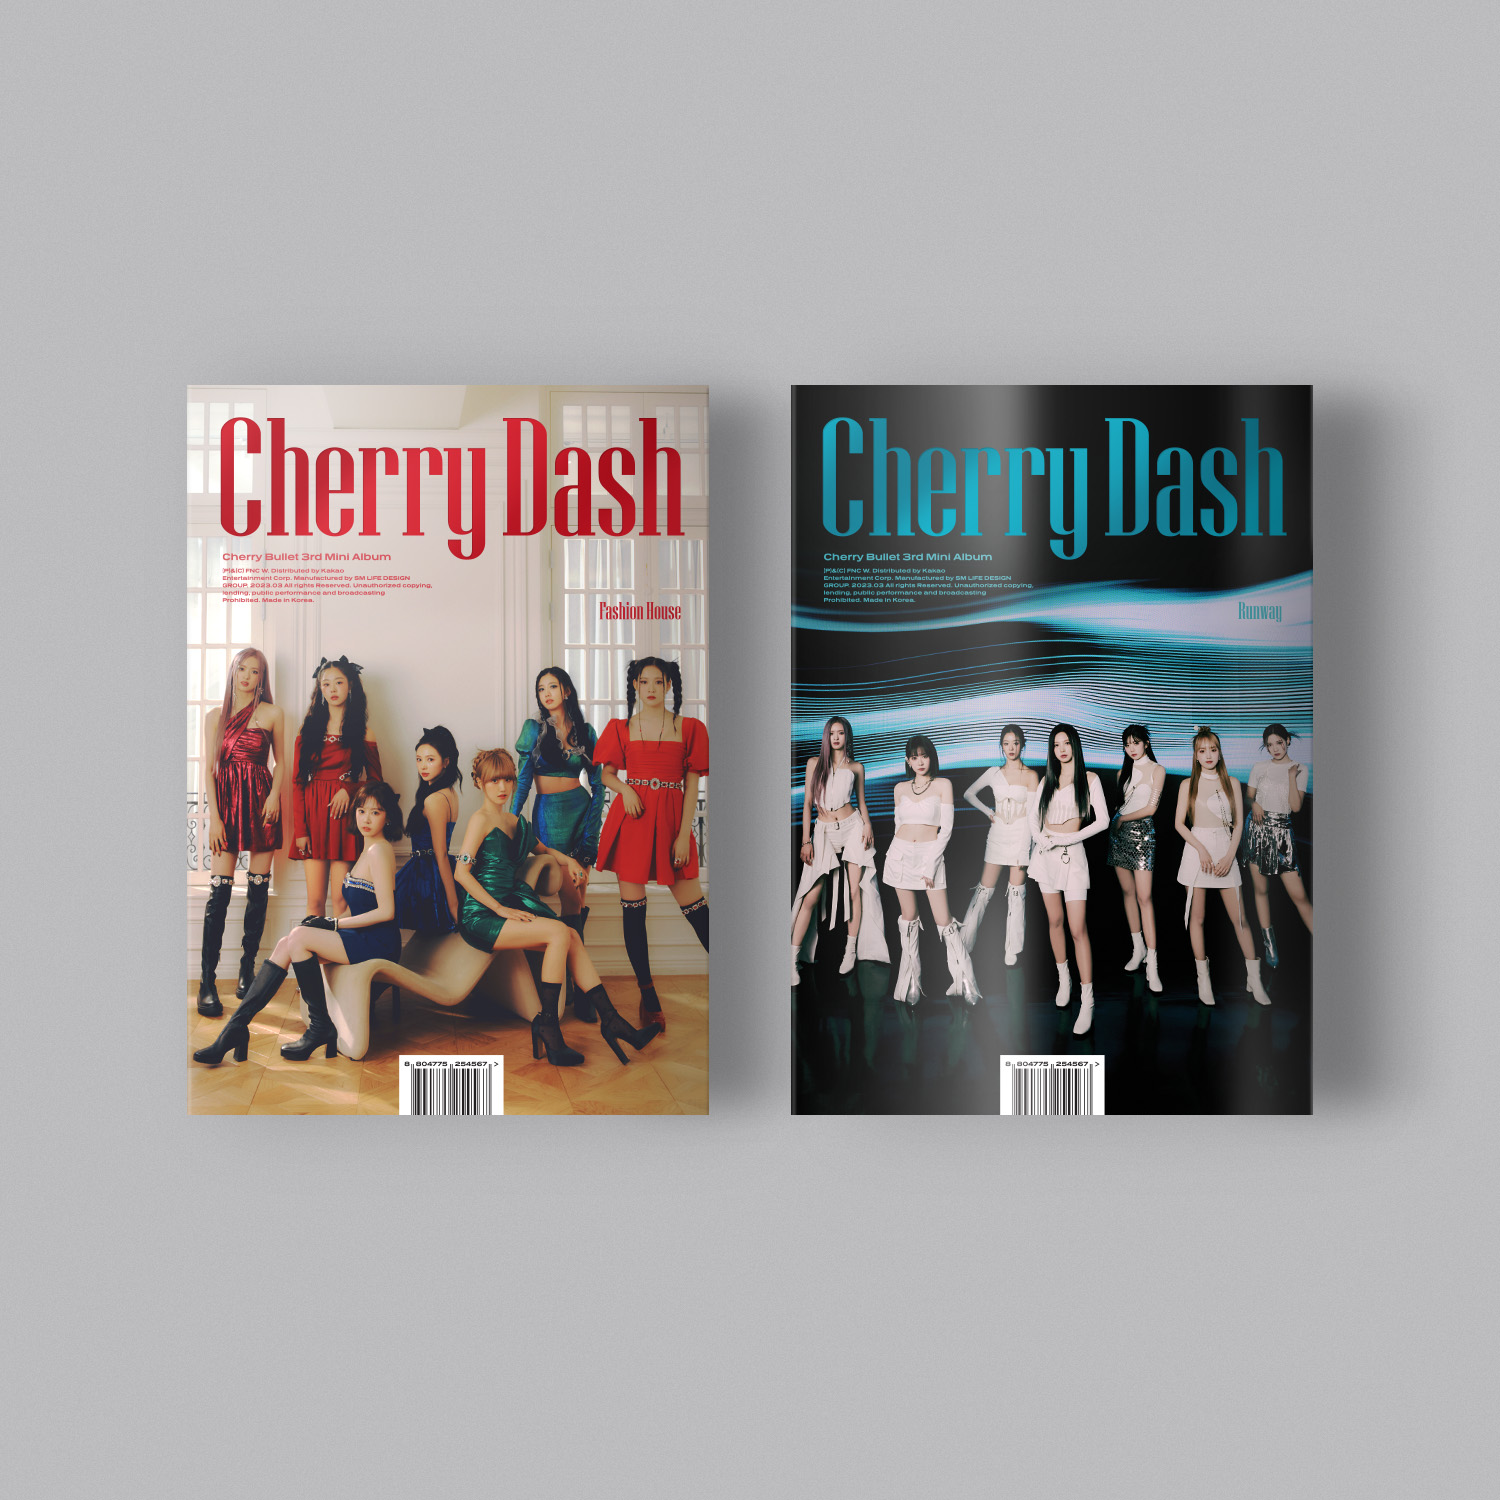 [全款 裸专][线下签售活动] [2CD 套装] Cherry Bullet - 迷你3辑 [Cherry Dash] (Fashion House Ver. + Runway Ver.)_许智媛的库洛狐乐园